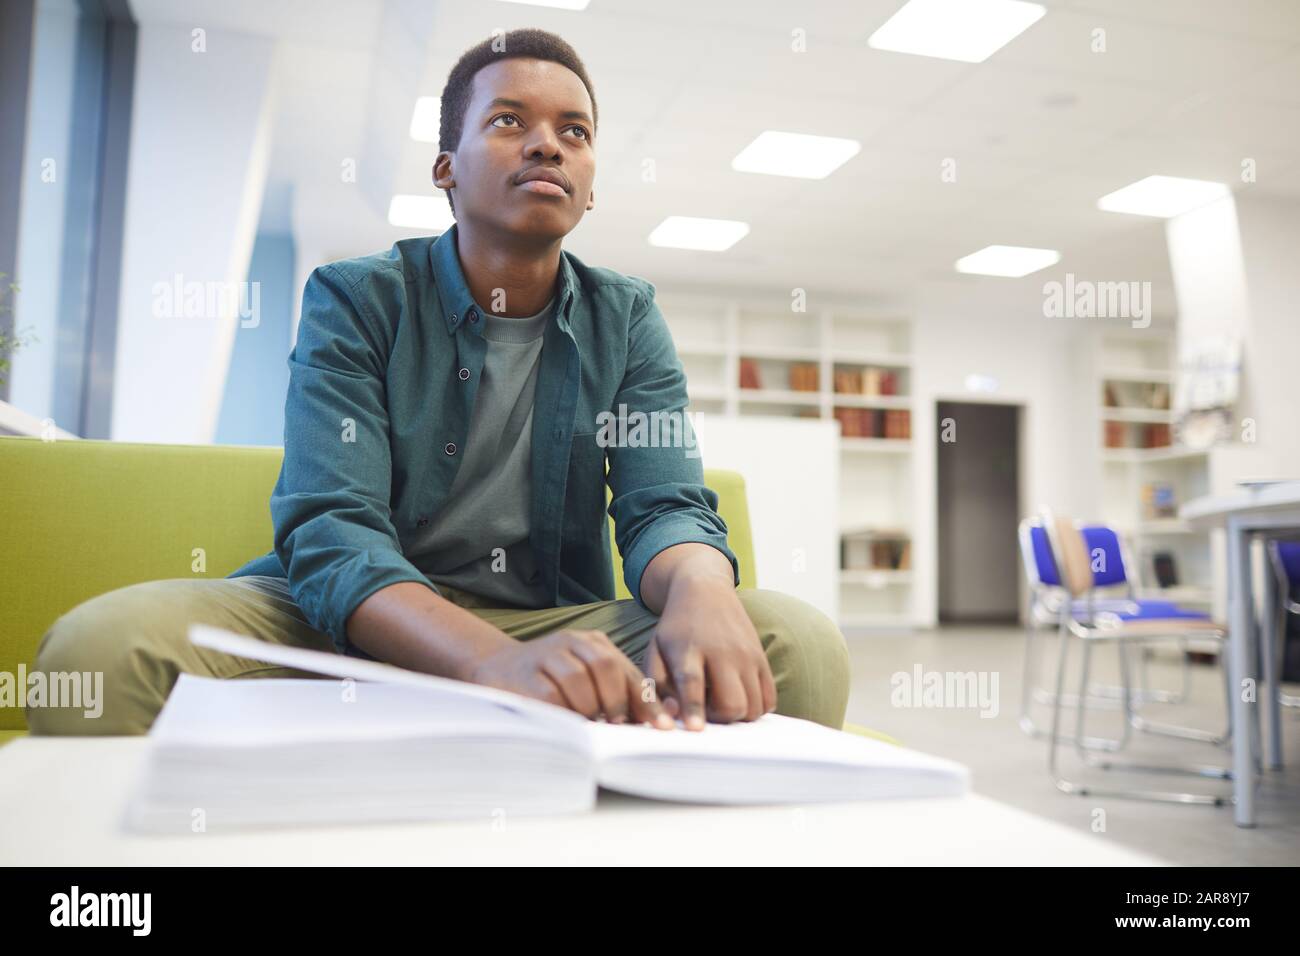 Portrait des jungen afroamerikanischen Mannes, der Braille liest, während er in der Schulbibliothek studiert, kopiere Raum Stockfoto